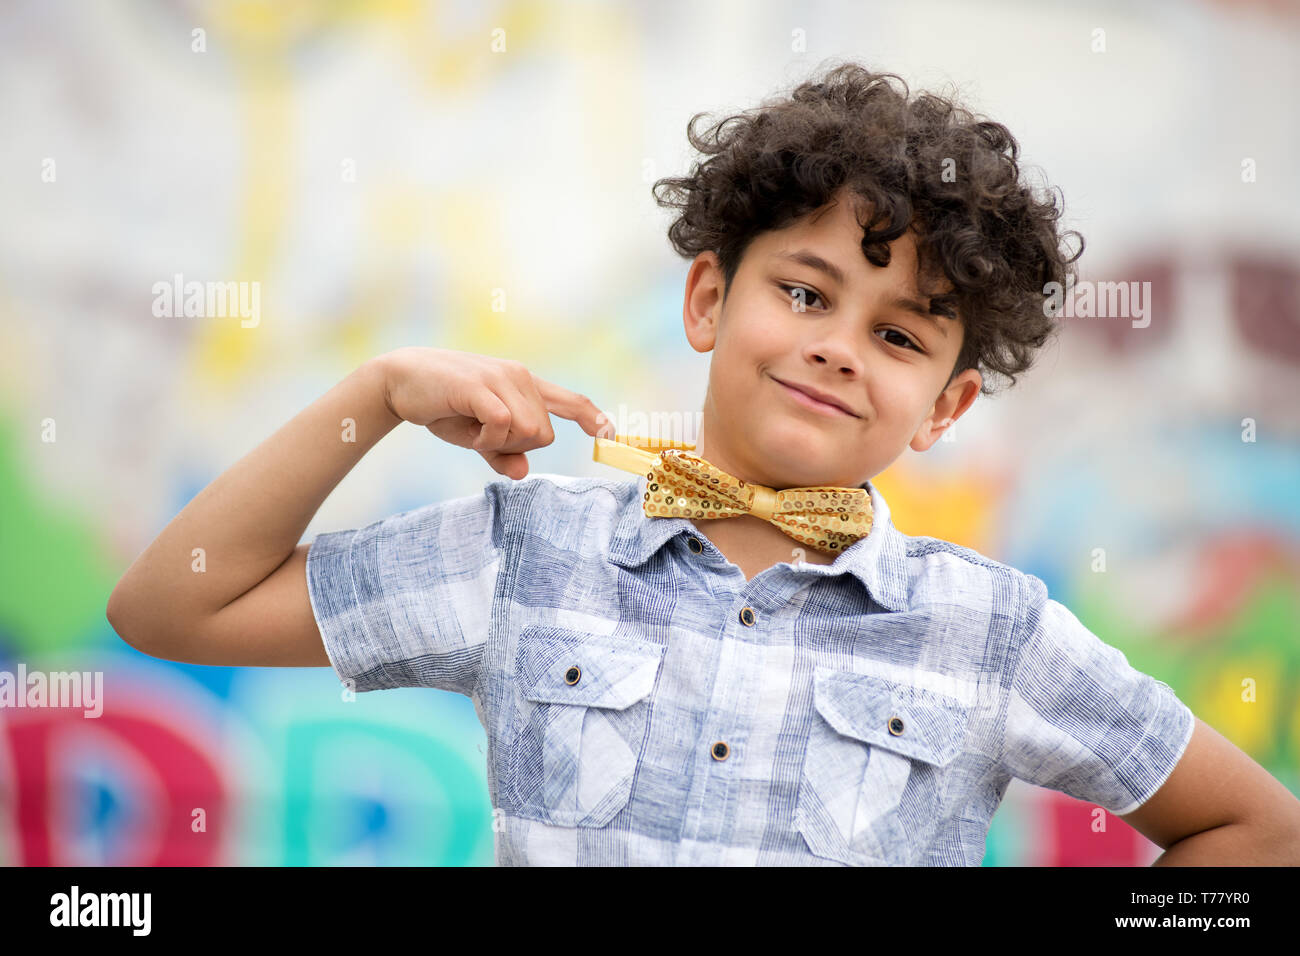 Stolz, Jungen zeigt auf seine Goldene Schleife binden mit einem strahlenden Lächeln vor einem bunten Graffiti wall abgedeckt Stockfoto